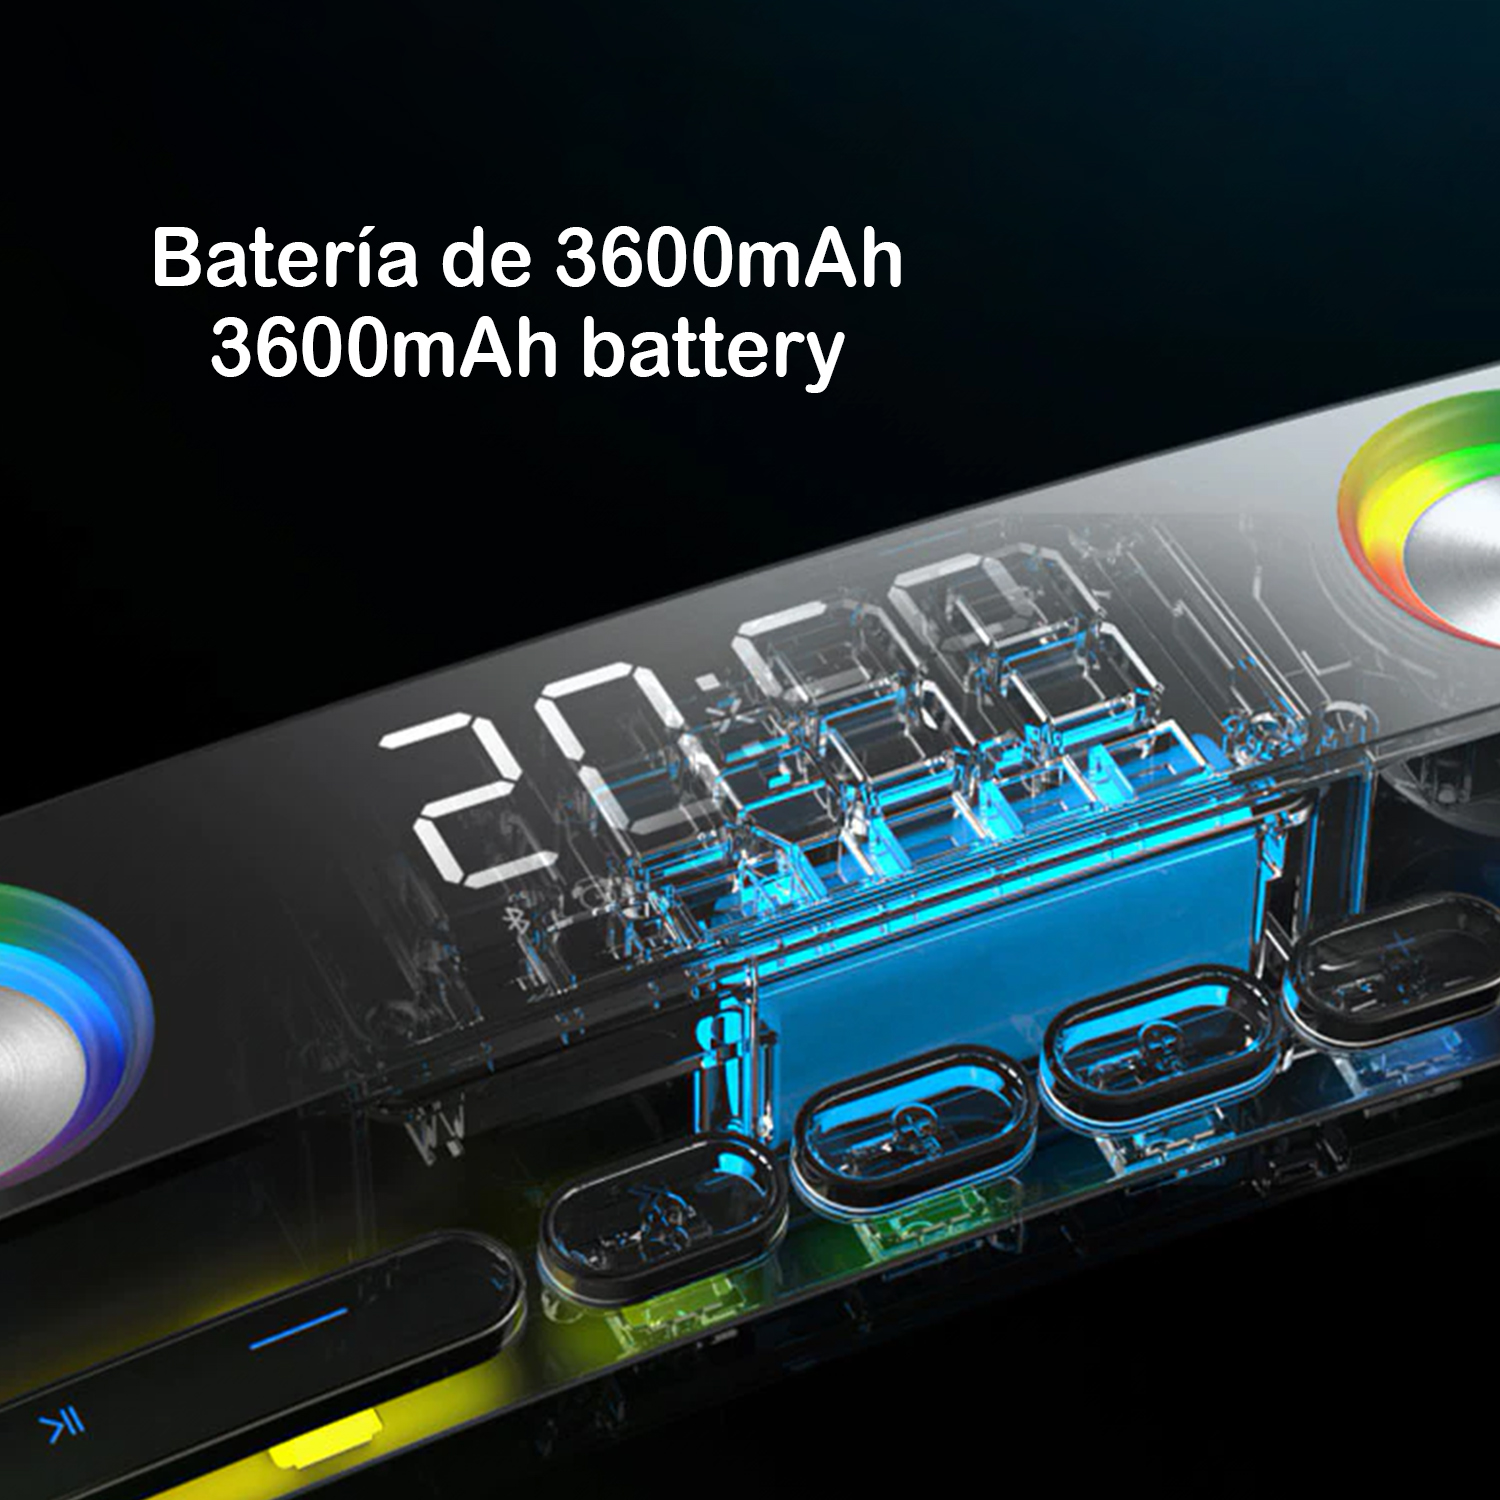 Barra de sonido SH39 Bluetooth 5.0 con teclas mecánicas, pantalla y luz RGB. Batería de 3600mAh. Gaming, home cinema.